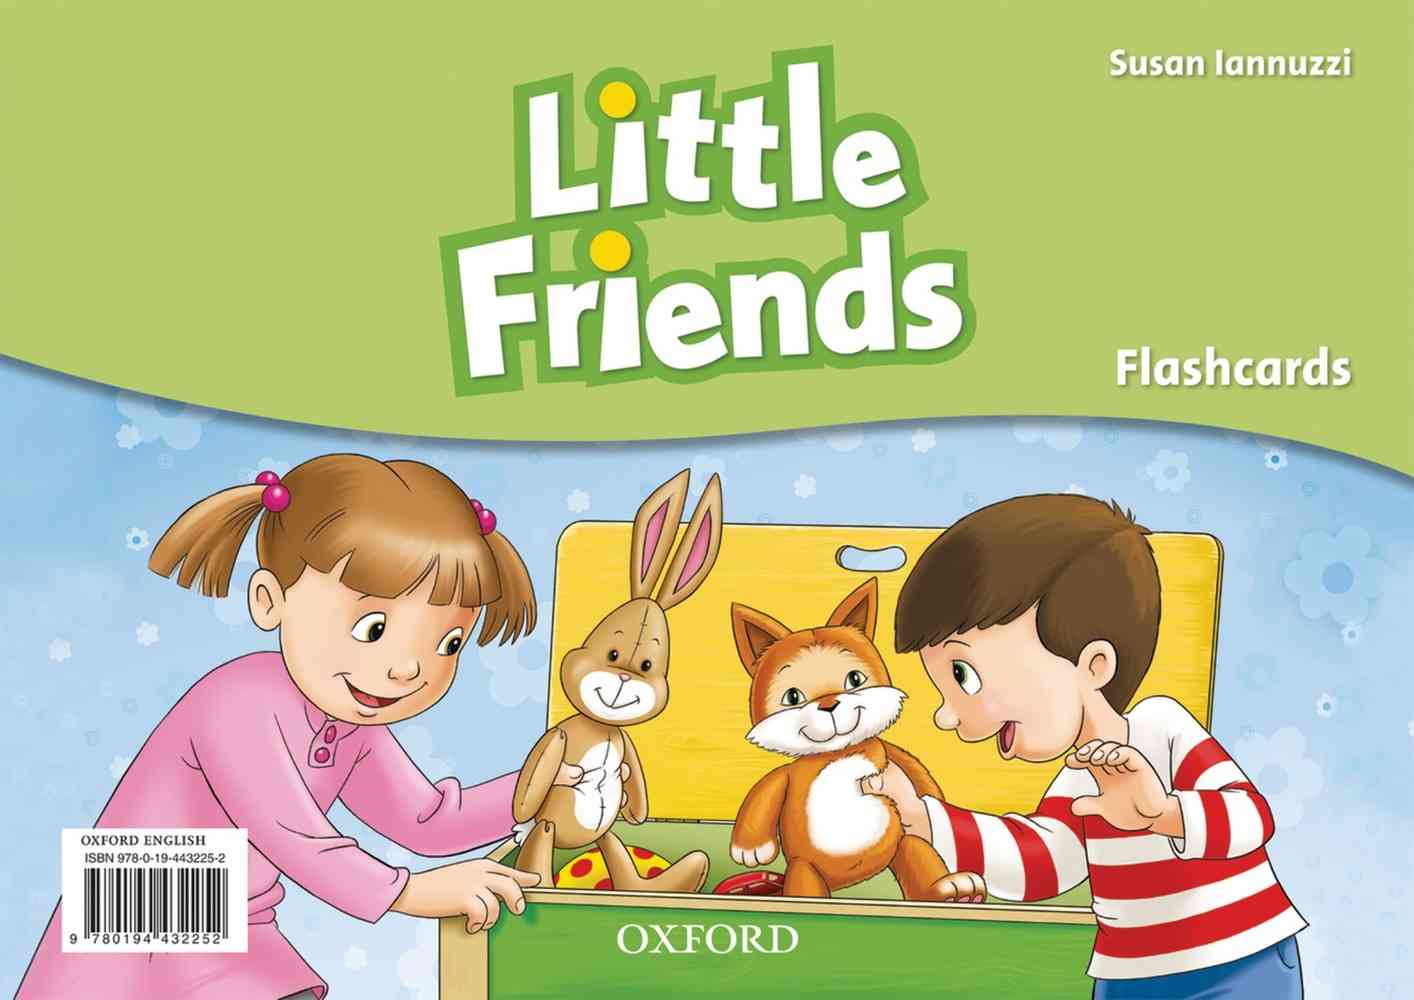 Little Friends: Flashcards niculescu.ro imagine noua